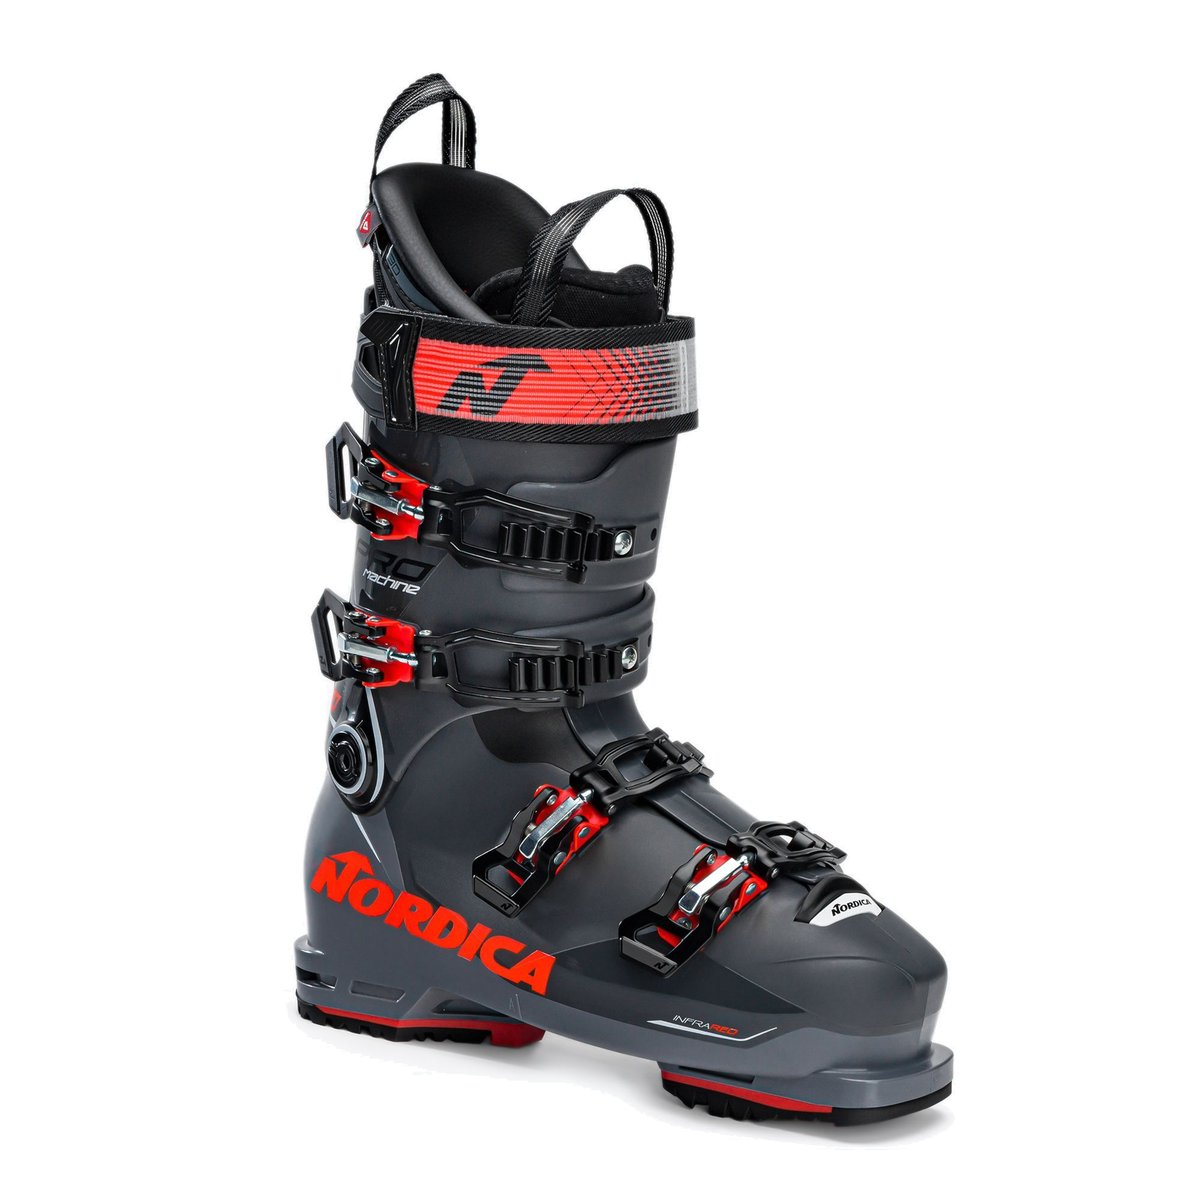 Buty narciarskie męskie Nordica Pro Machine 110 GW szare 050F5002 M99 29.0